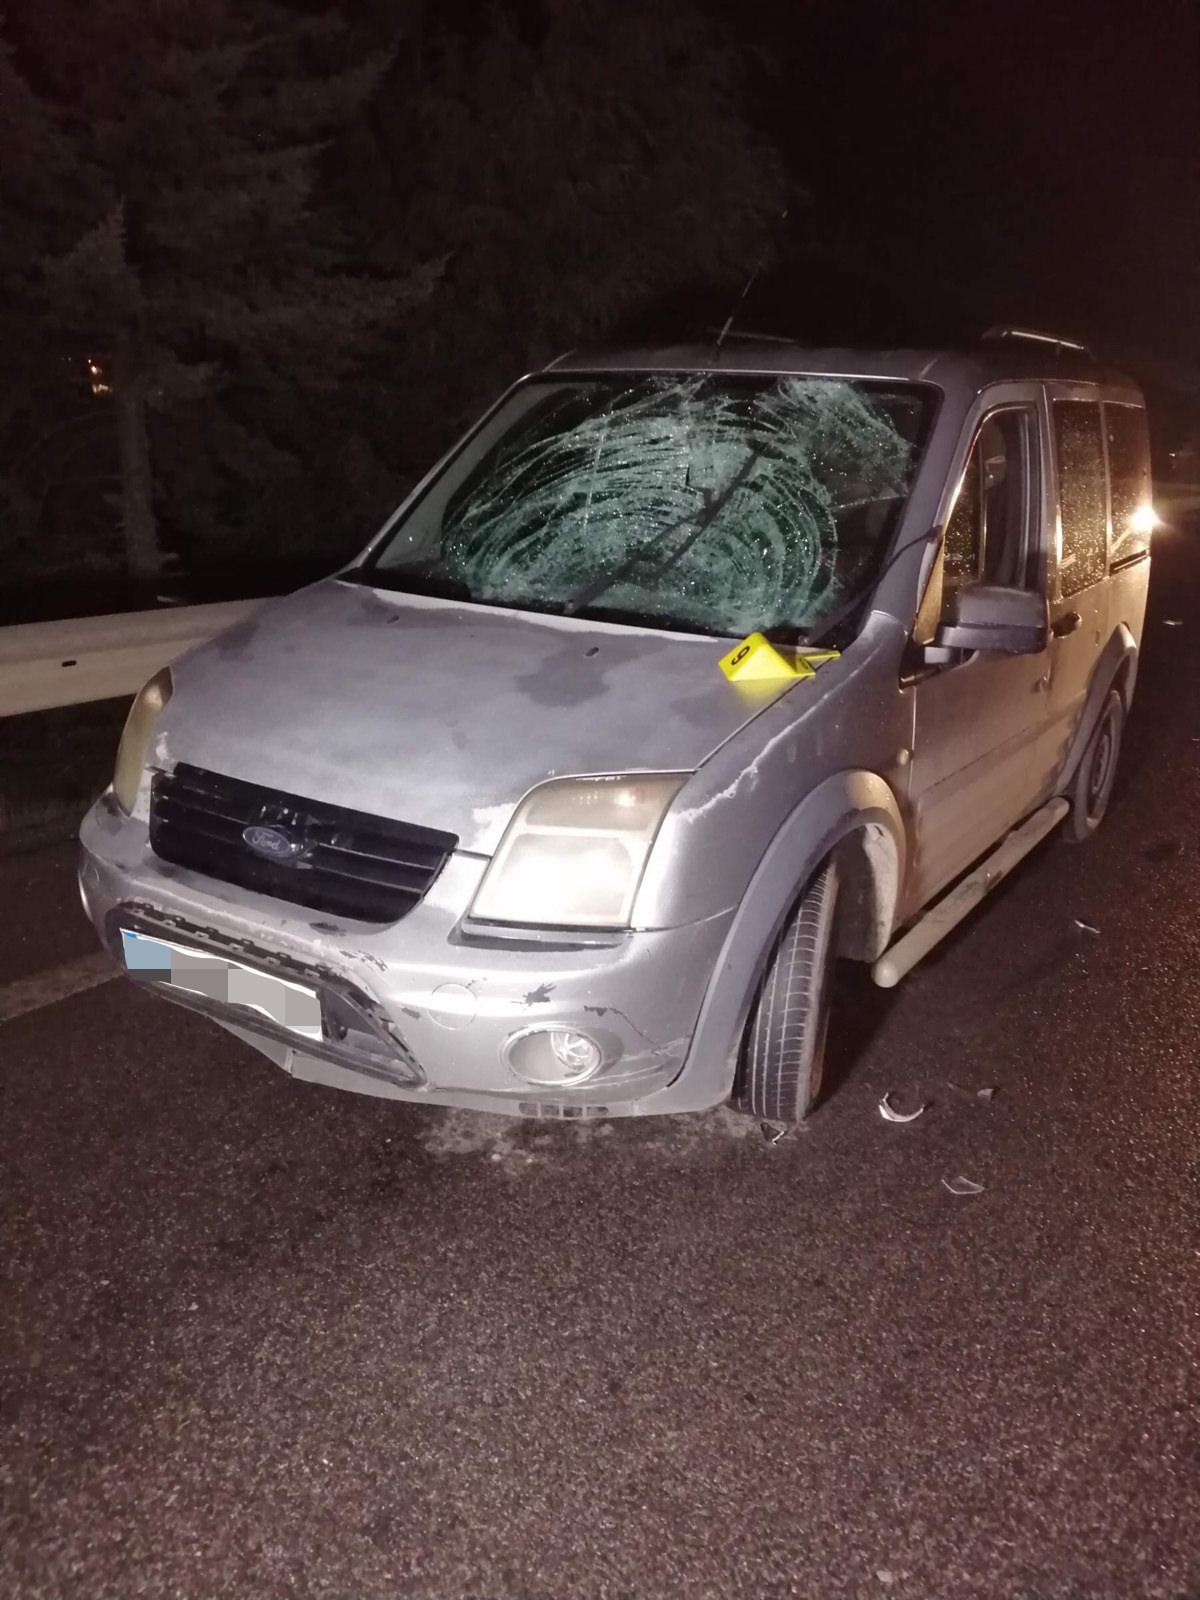 Kara yolunda tartışırken araç çarpan iki kişi hayatını kaybetti